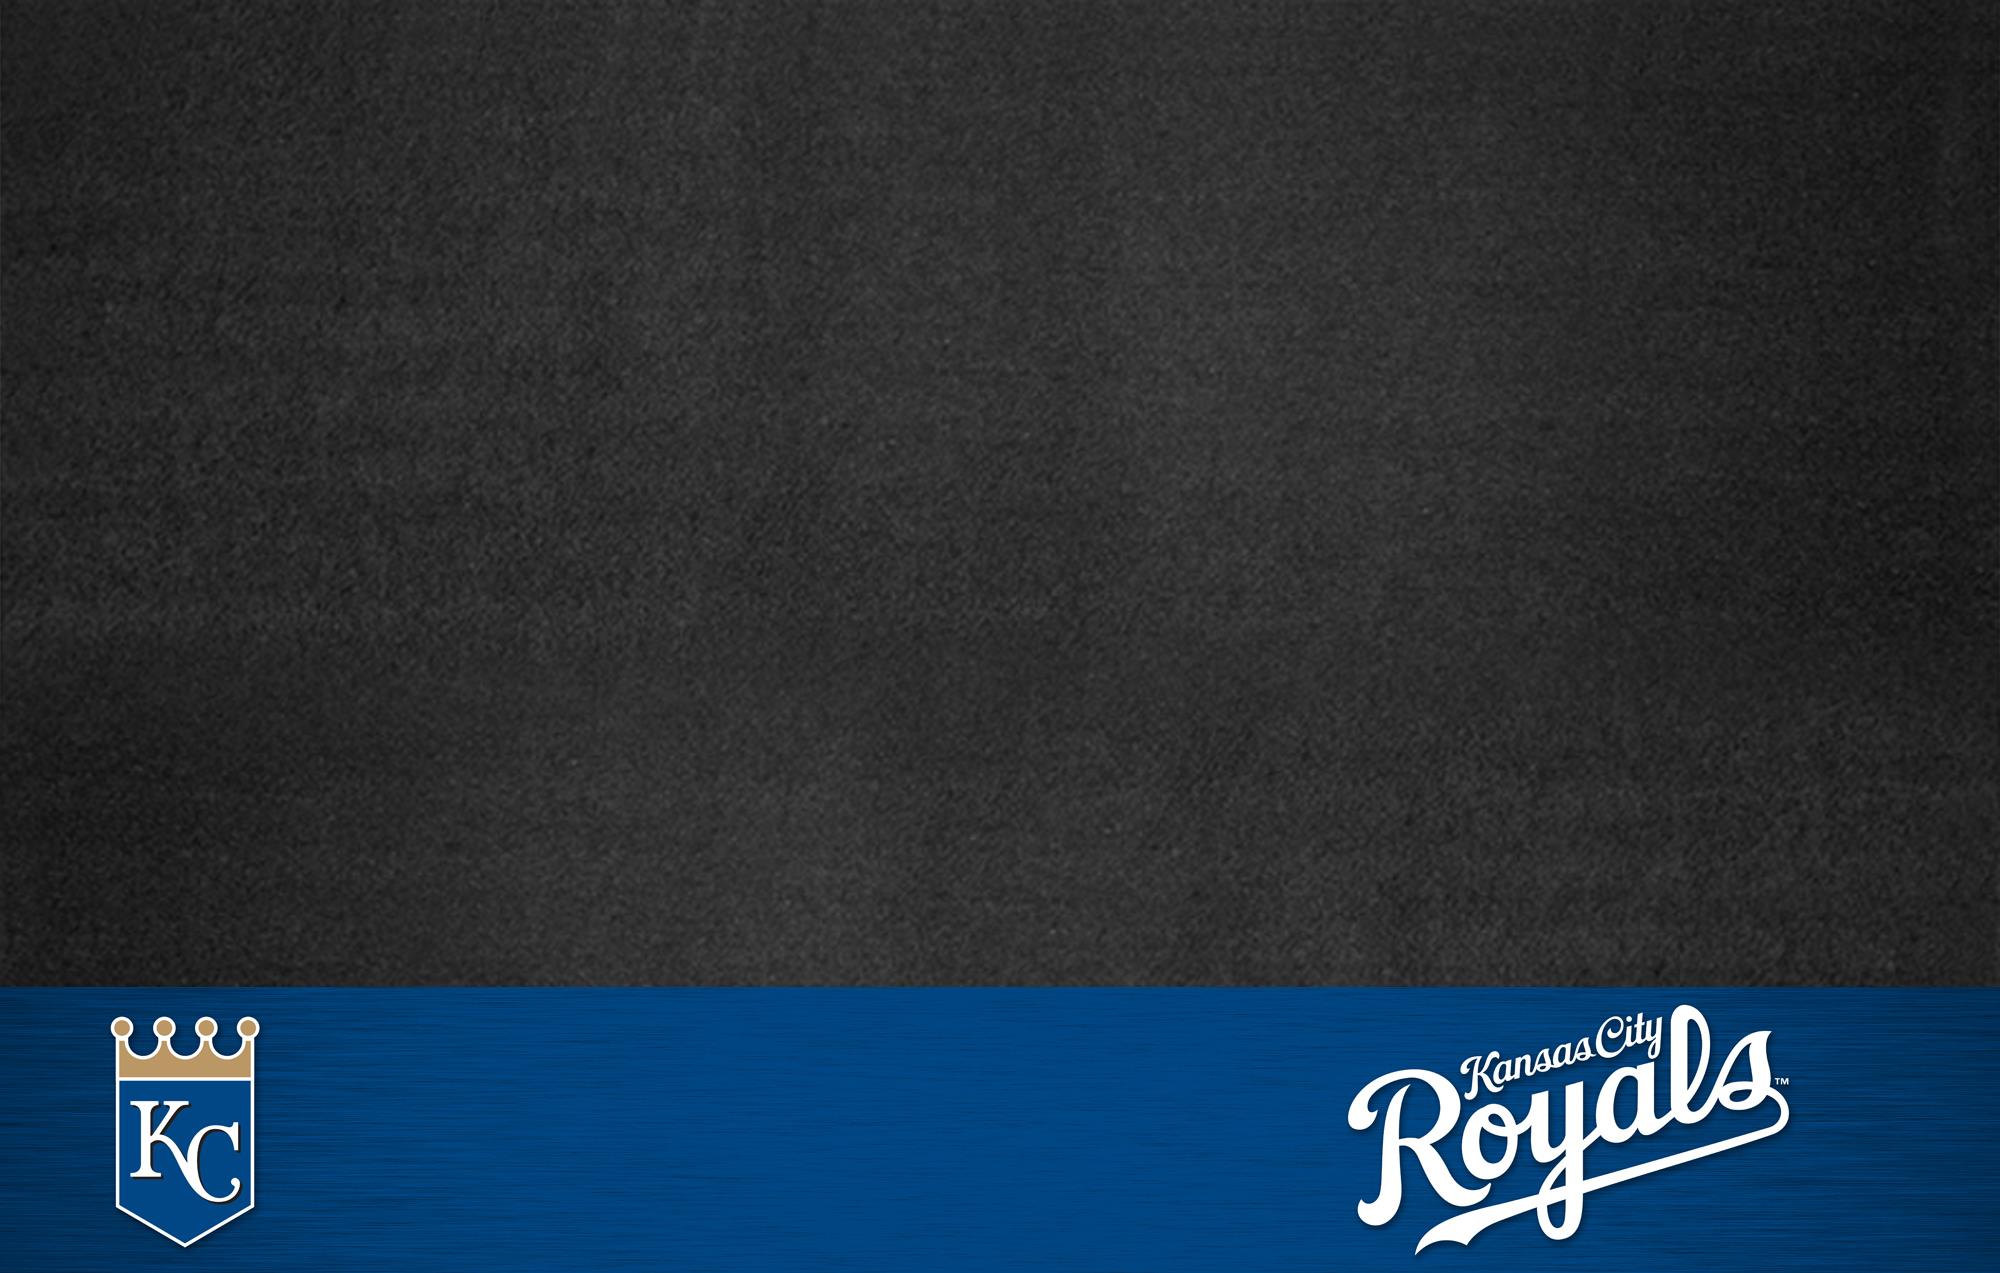 KANSAS CITY ROYALS mlb baseball 16 wallpaper 1920x1080